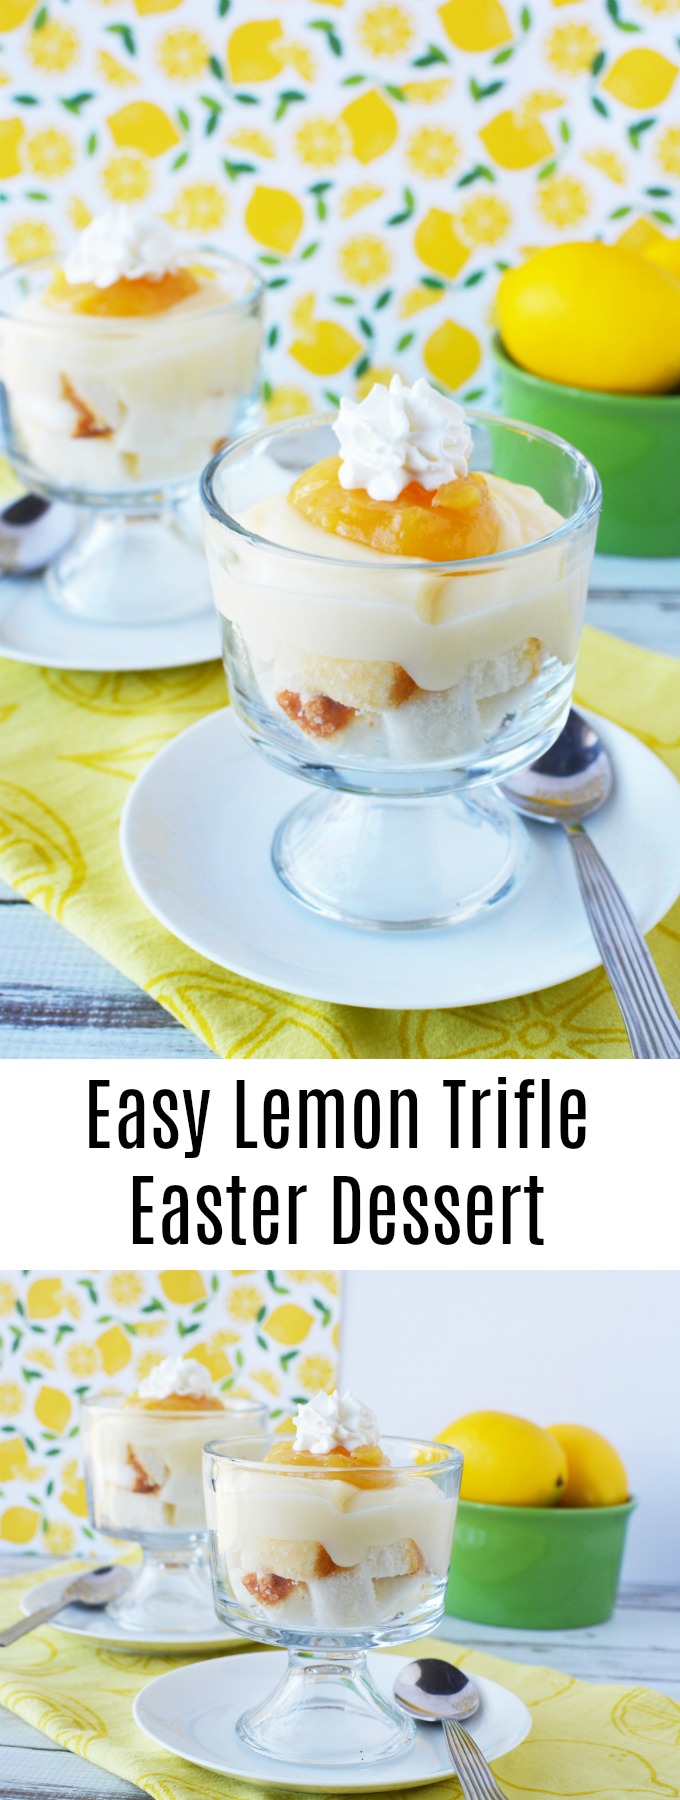 Easy Easter Lemon Trifle Dessert Recipe